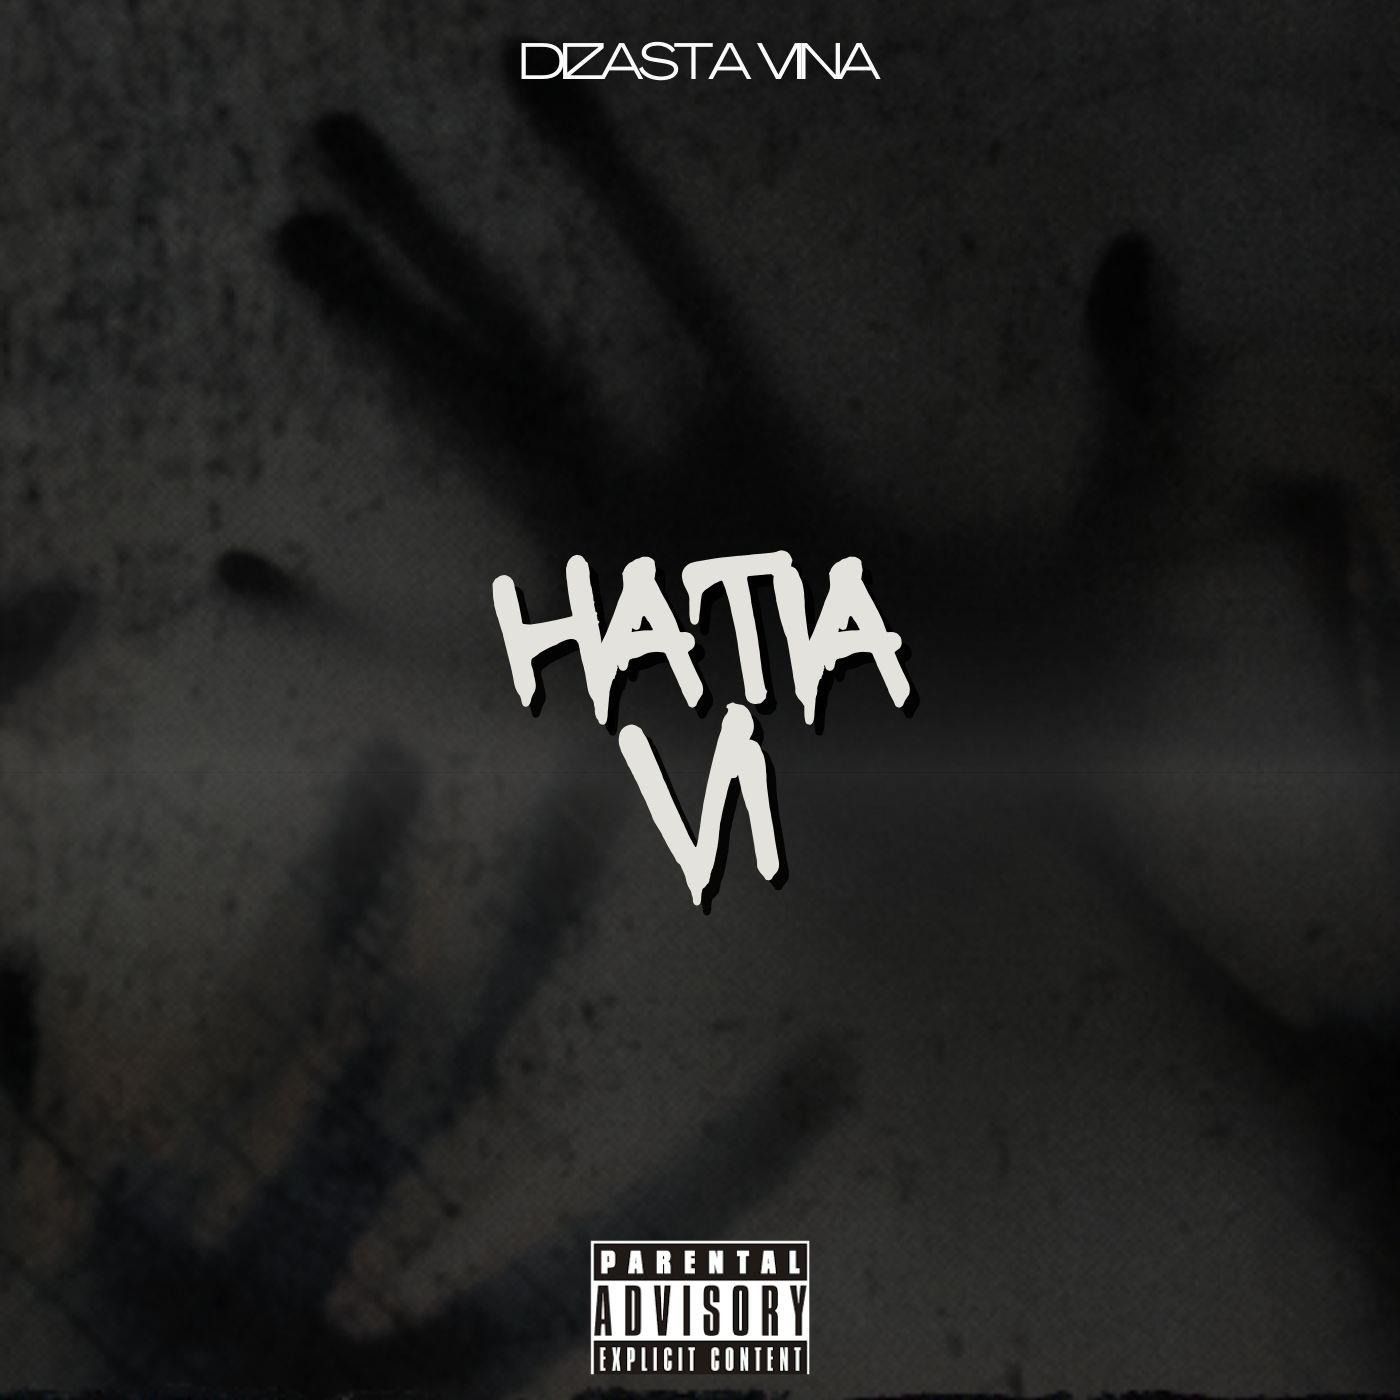 Audio: Dizasta Vina - Hatia VI (Mp3 Download)